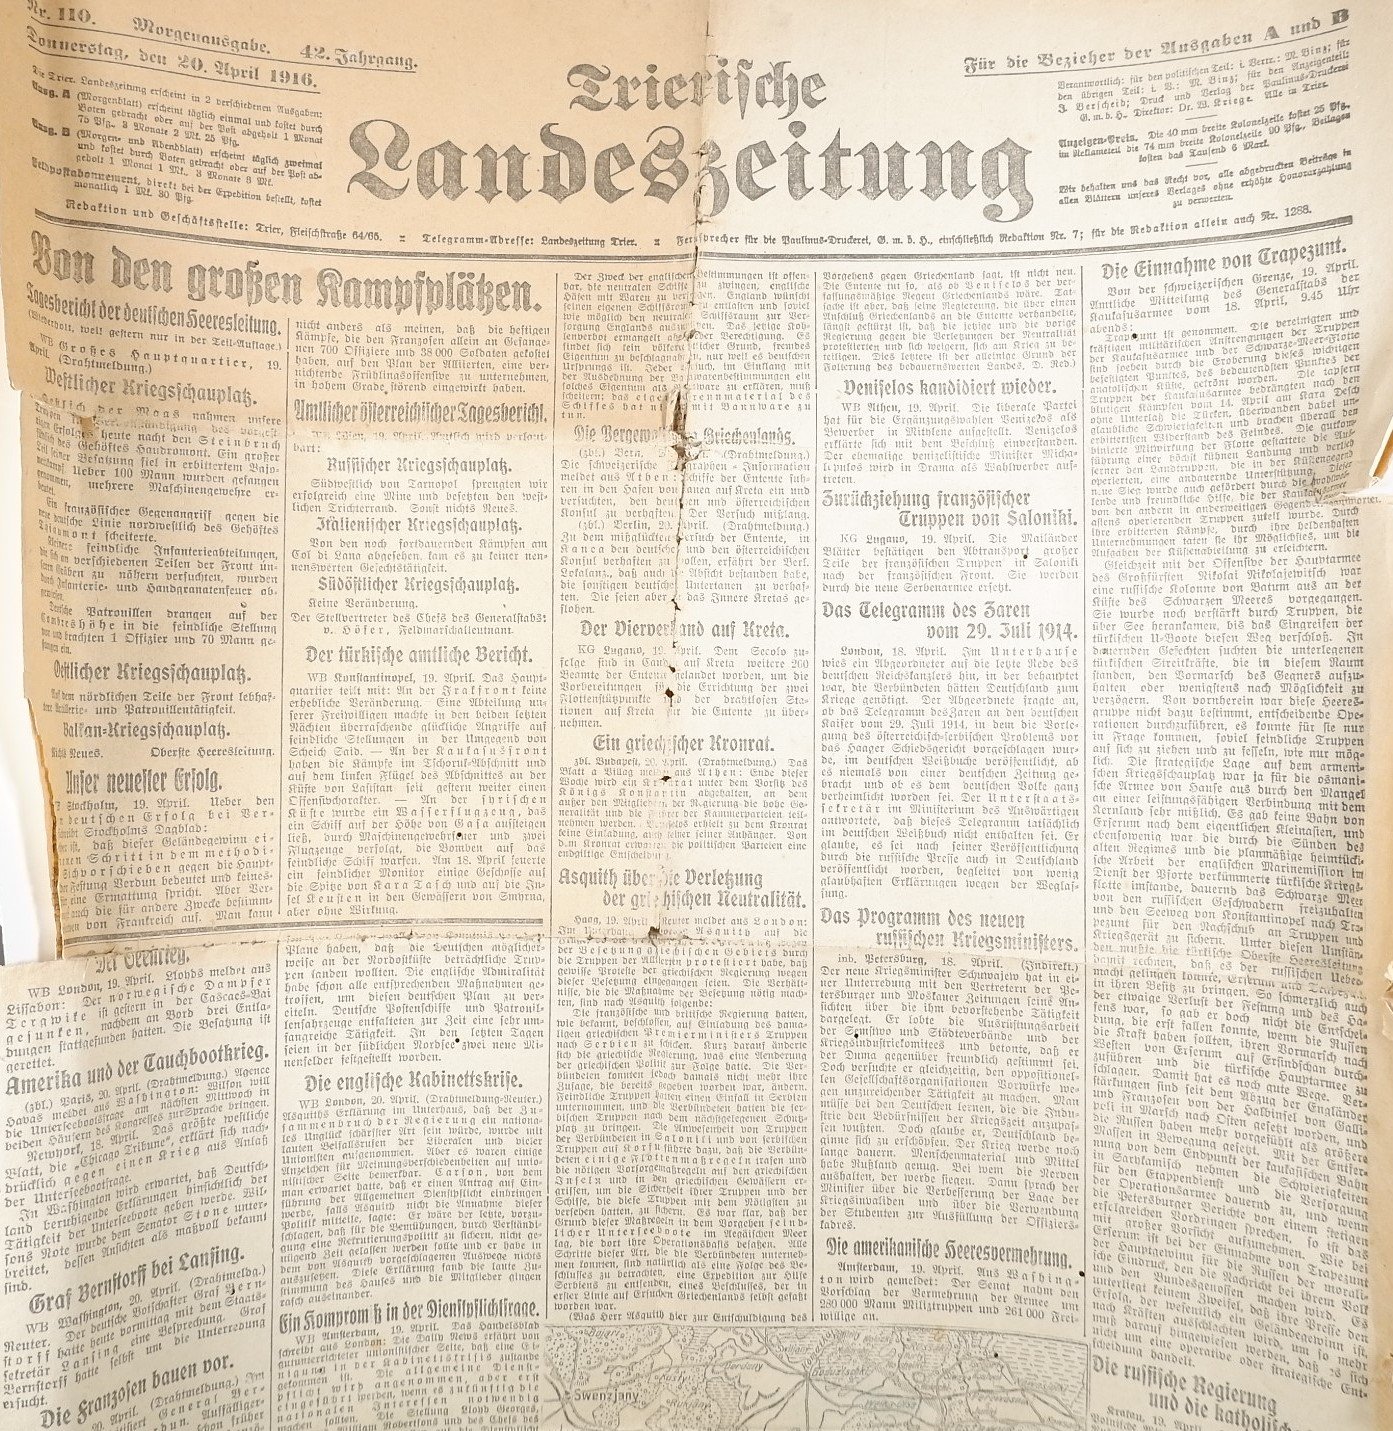 Trierische Landeszeitung 20. April 1916 (Volkskunde- und Freilichtmuseum Roscheider Hof RR-F)